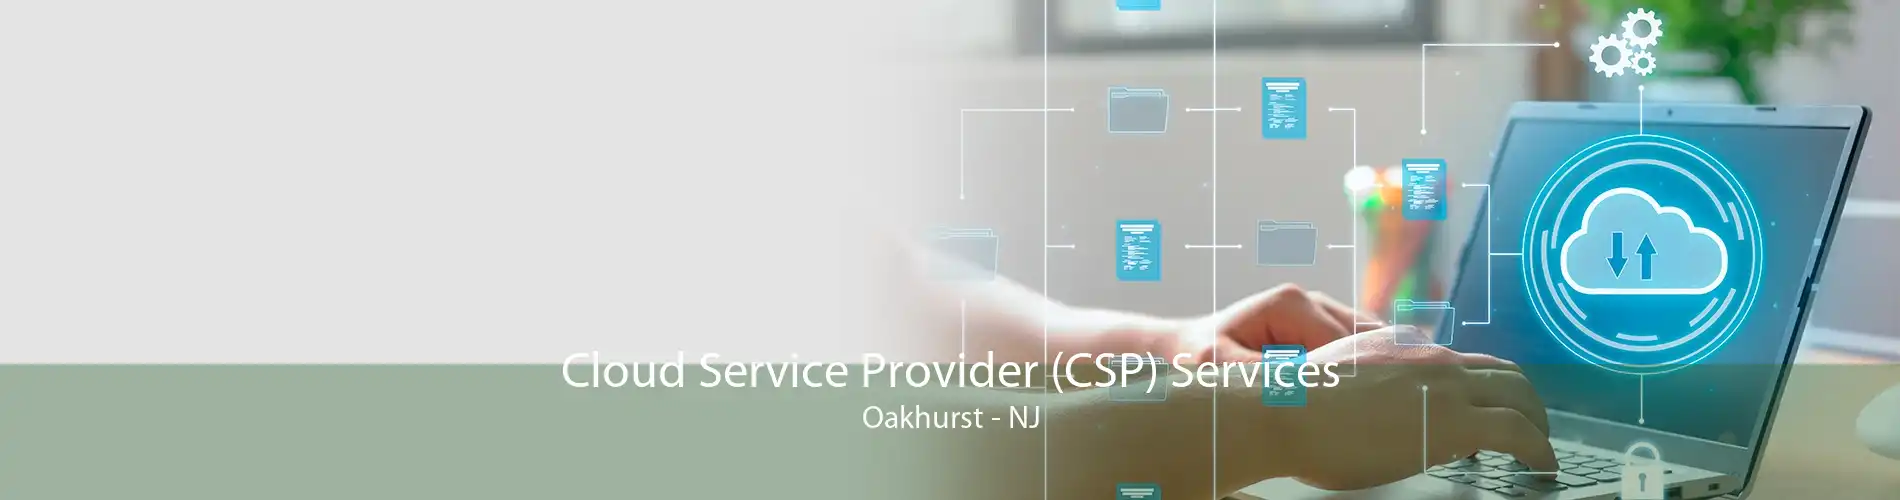 Cloud Service Provider (CSP) Services Oakhurst - NJ